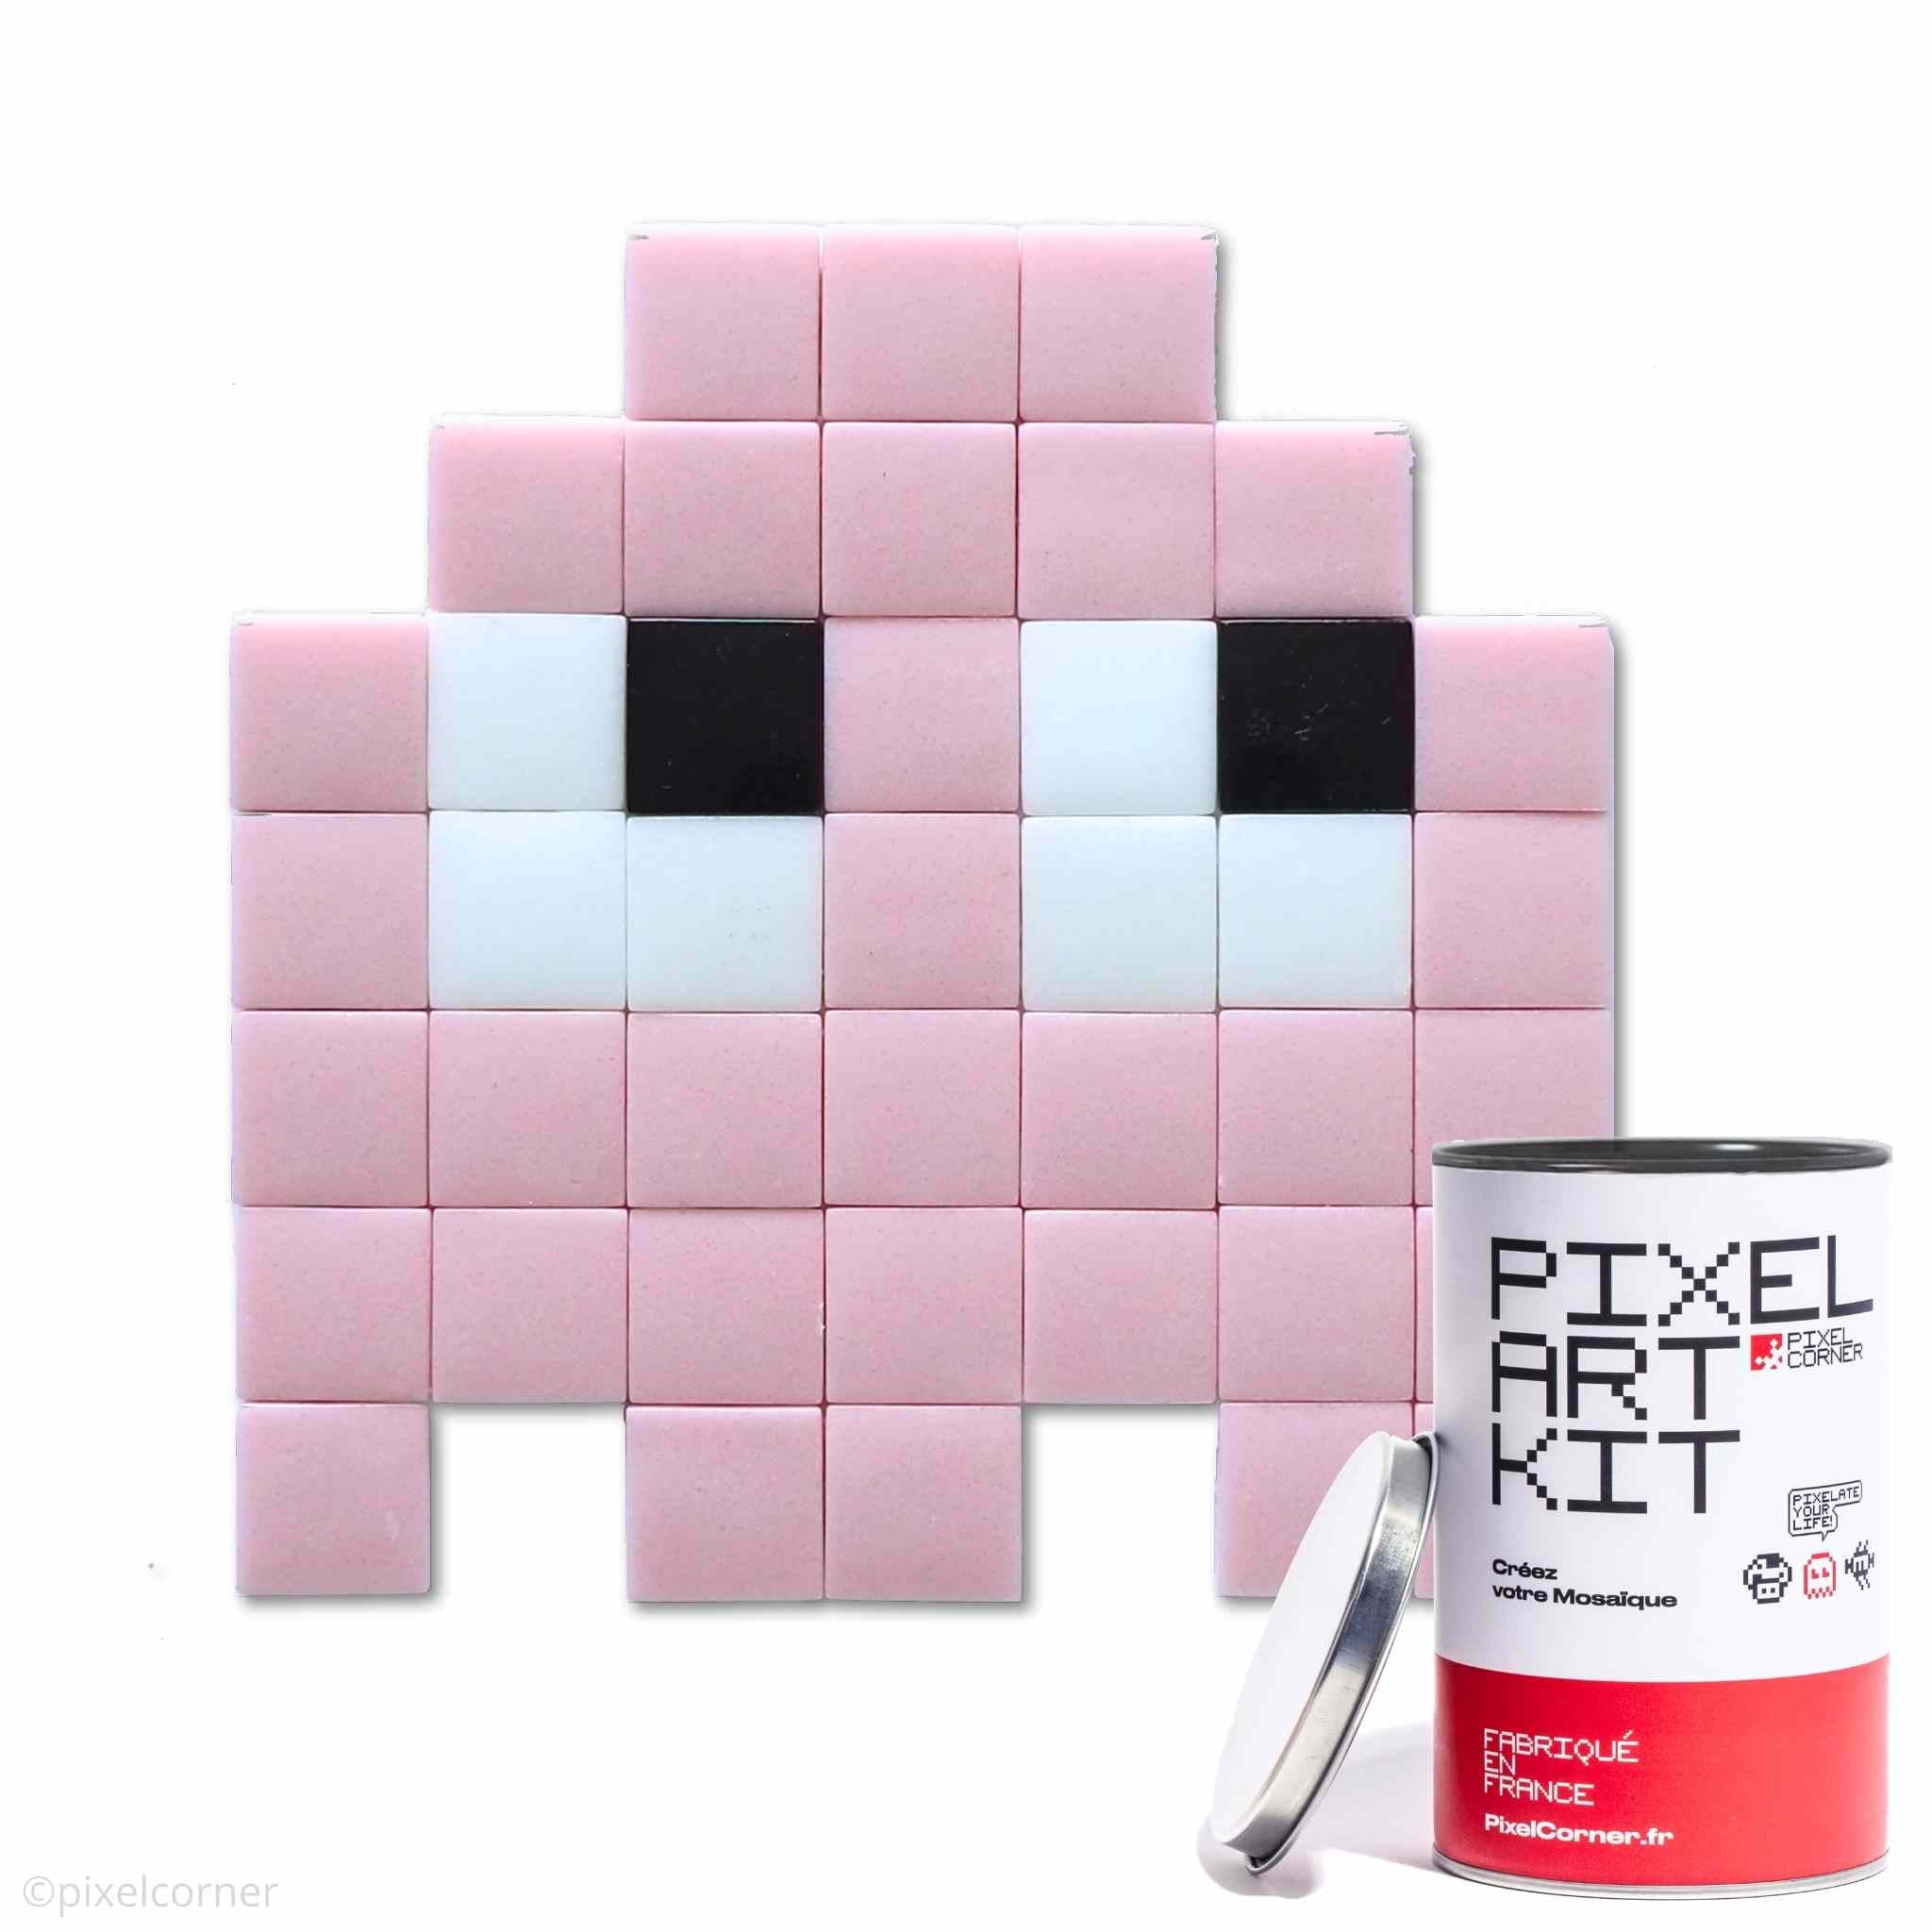 Un fantome rose en pixel art retro gaming arcade pacman avec des carreaux de mosaïque de verre avec une boite de pixel art kit diy au premier plan